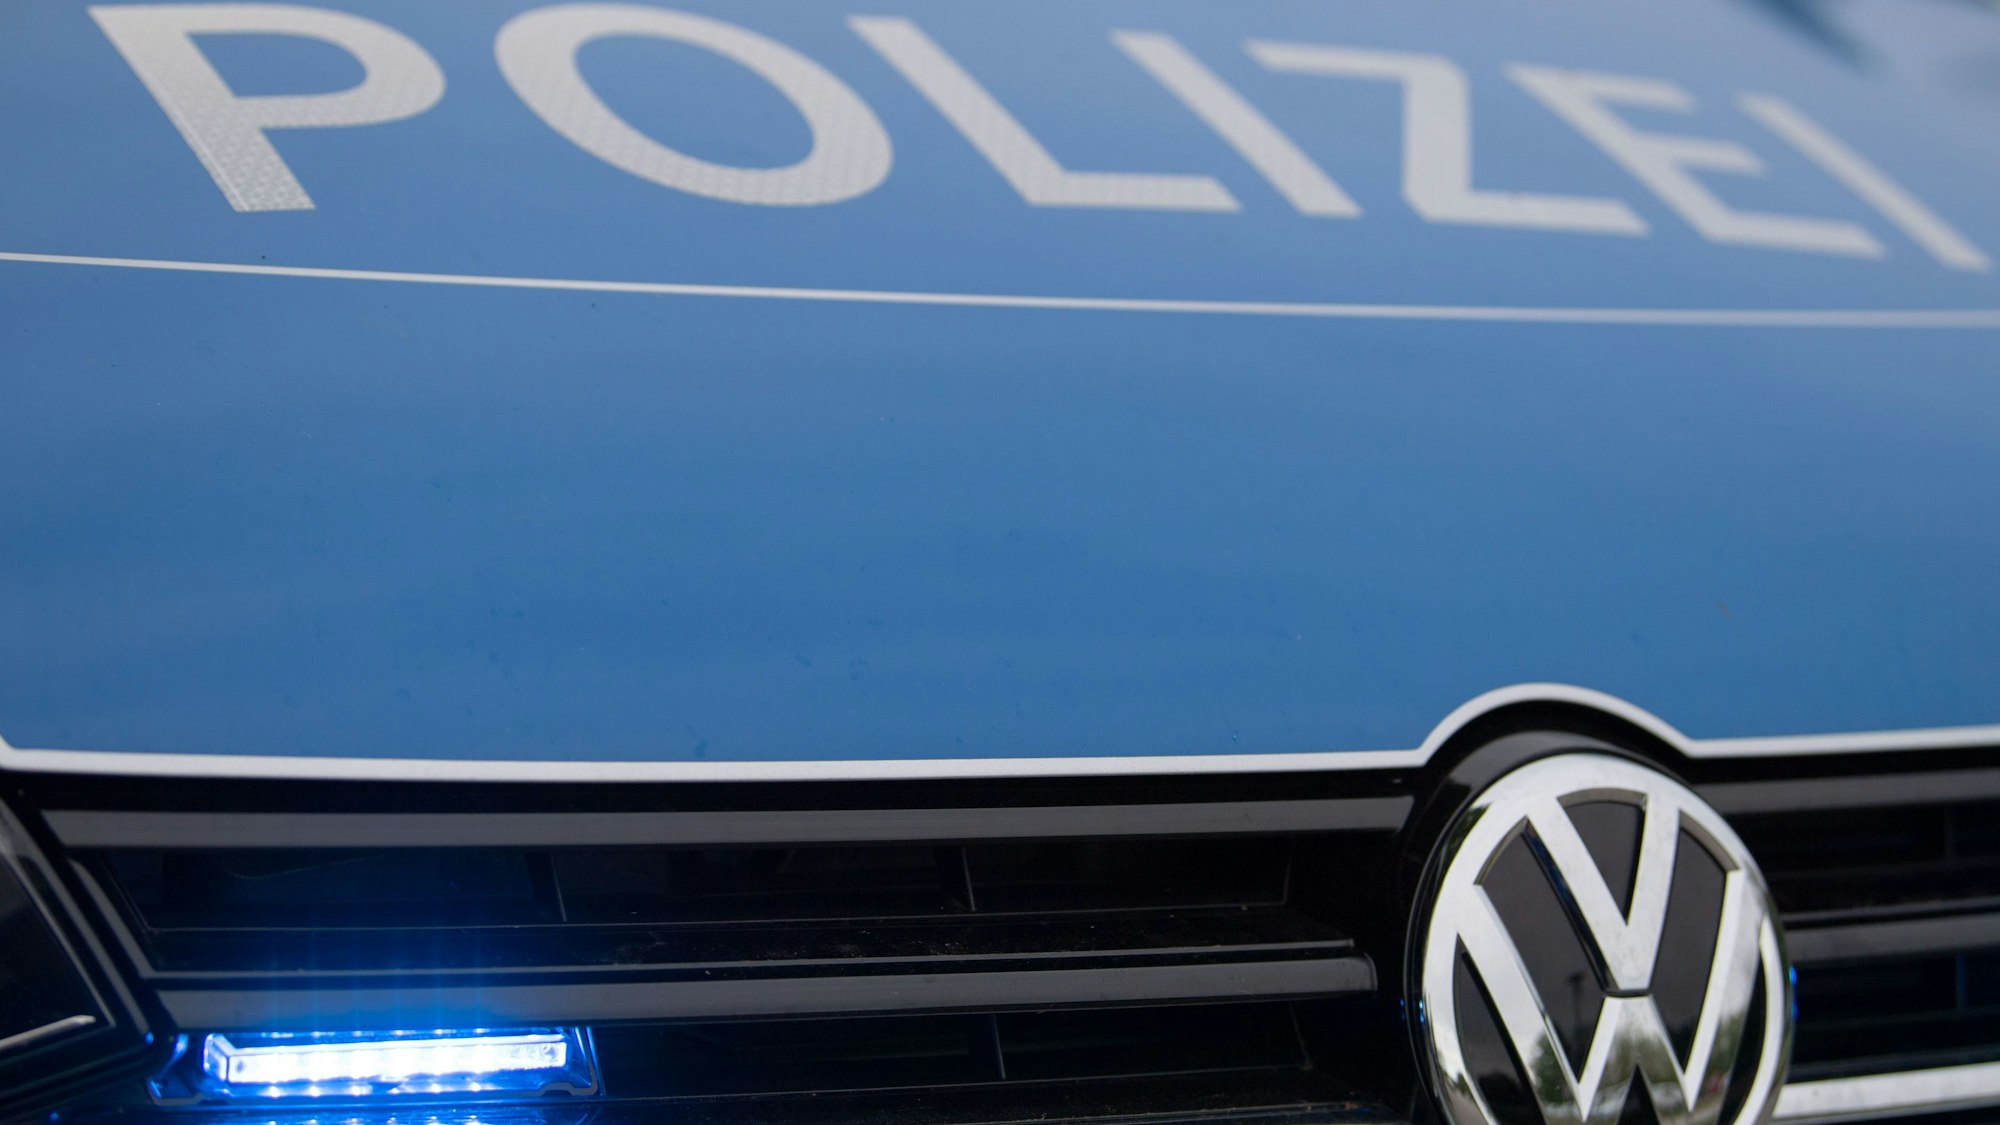 Ein Blaulicht leuchtet im Kühlergrill eines Polizeiautos.